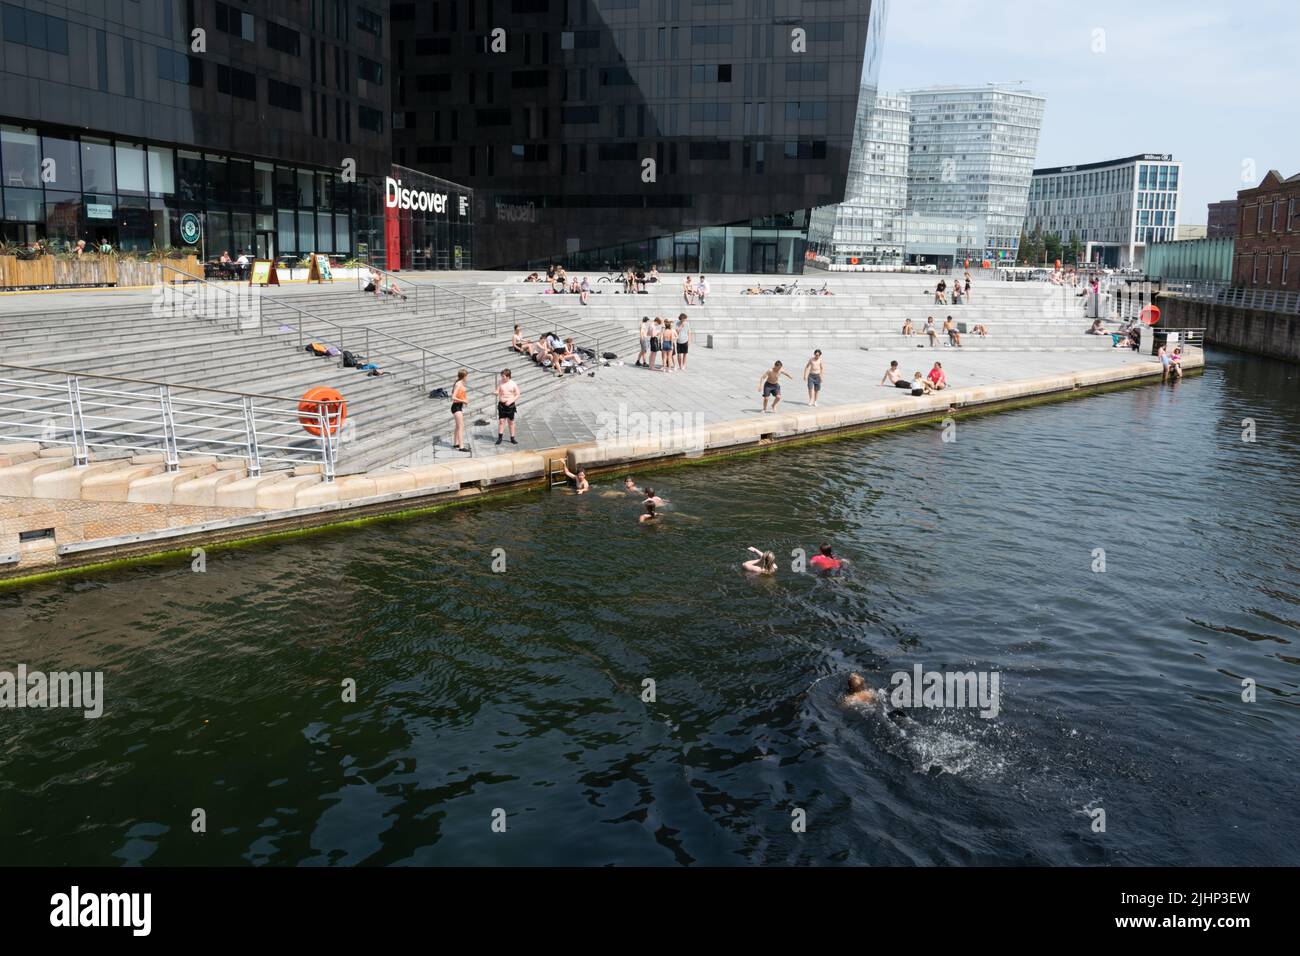 Teenager-Schwimmer kühlen sich am Tag der Rekordtemperatur in Großbritannien ab. Wharf vor Mann Island während der Hitzewelle. Liverpool, Großbritannien. Stockfoto